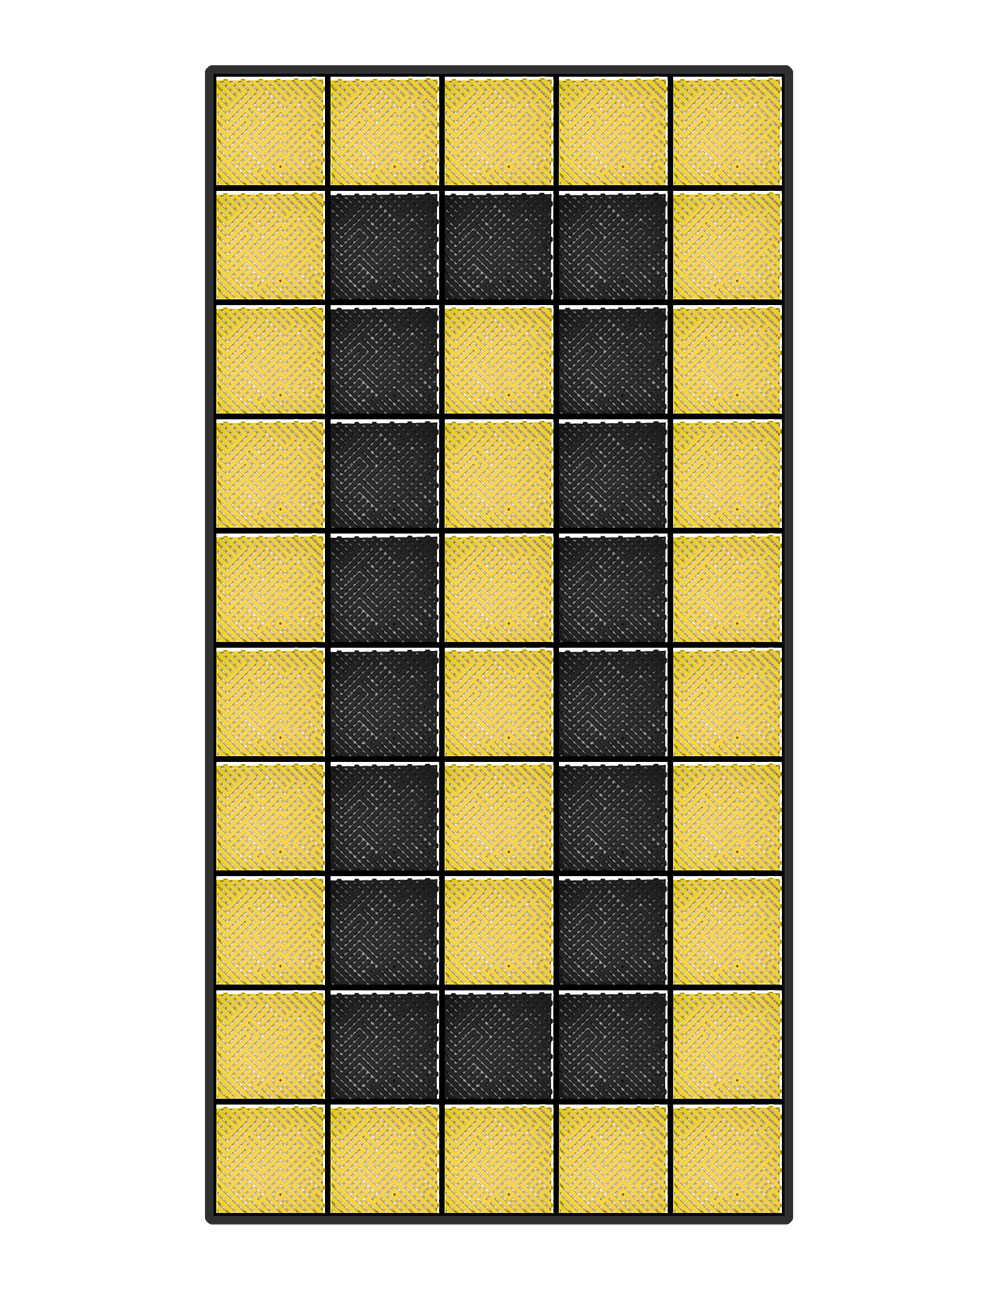 Kit dalles de sol motif racing pour voiture - 12m² - 2,5 m x 5 m - Jaune et noir